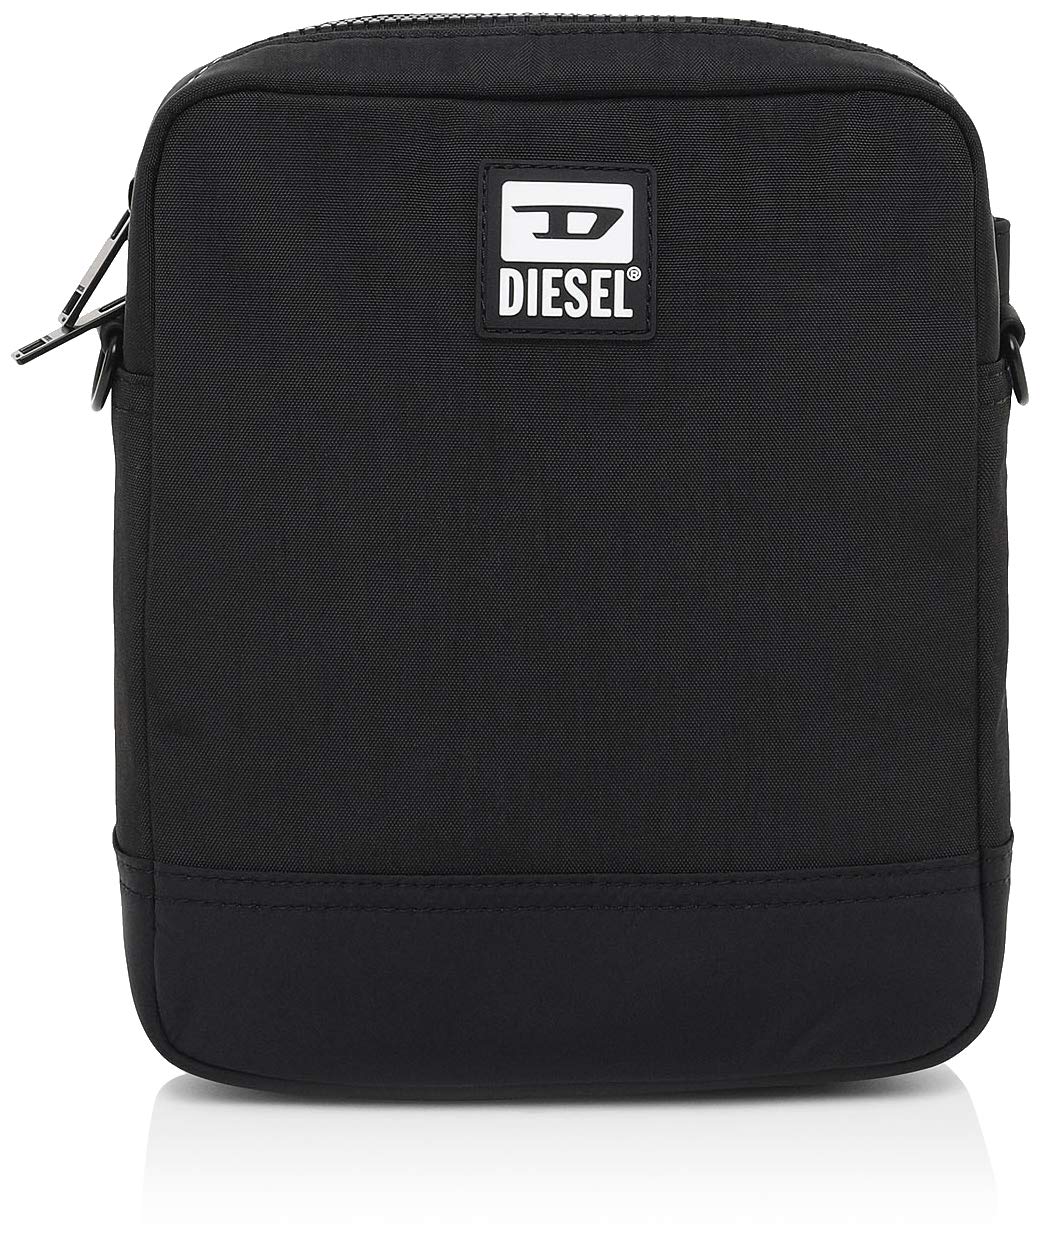 Diesel Herren Cross Bodybag - BULERO ALTAIRO CROSS BODYBAG